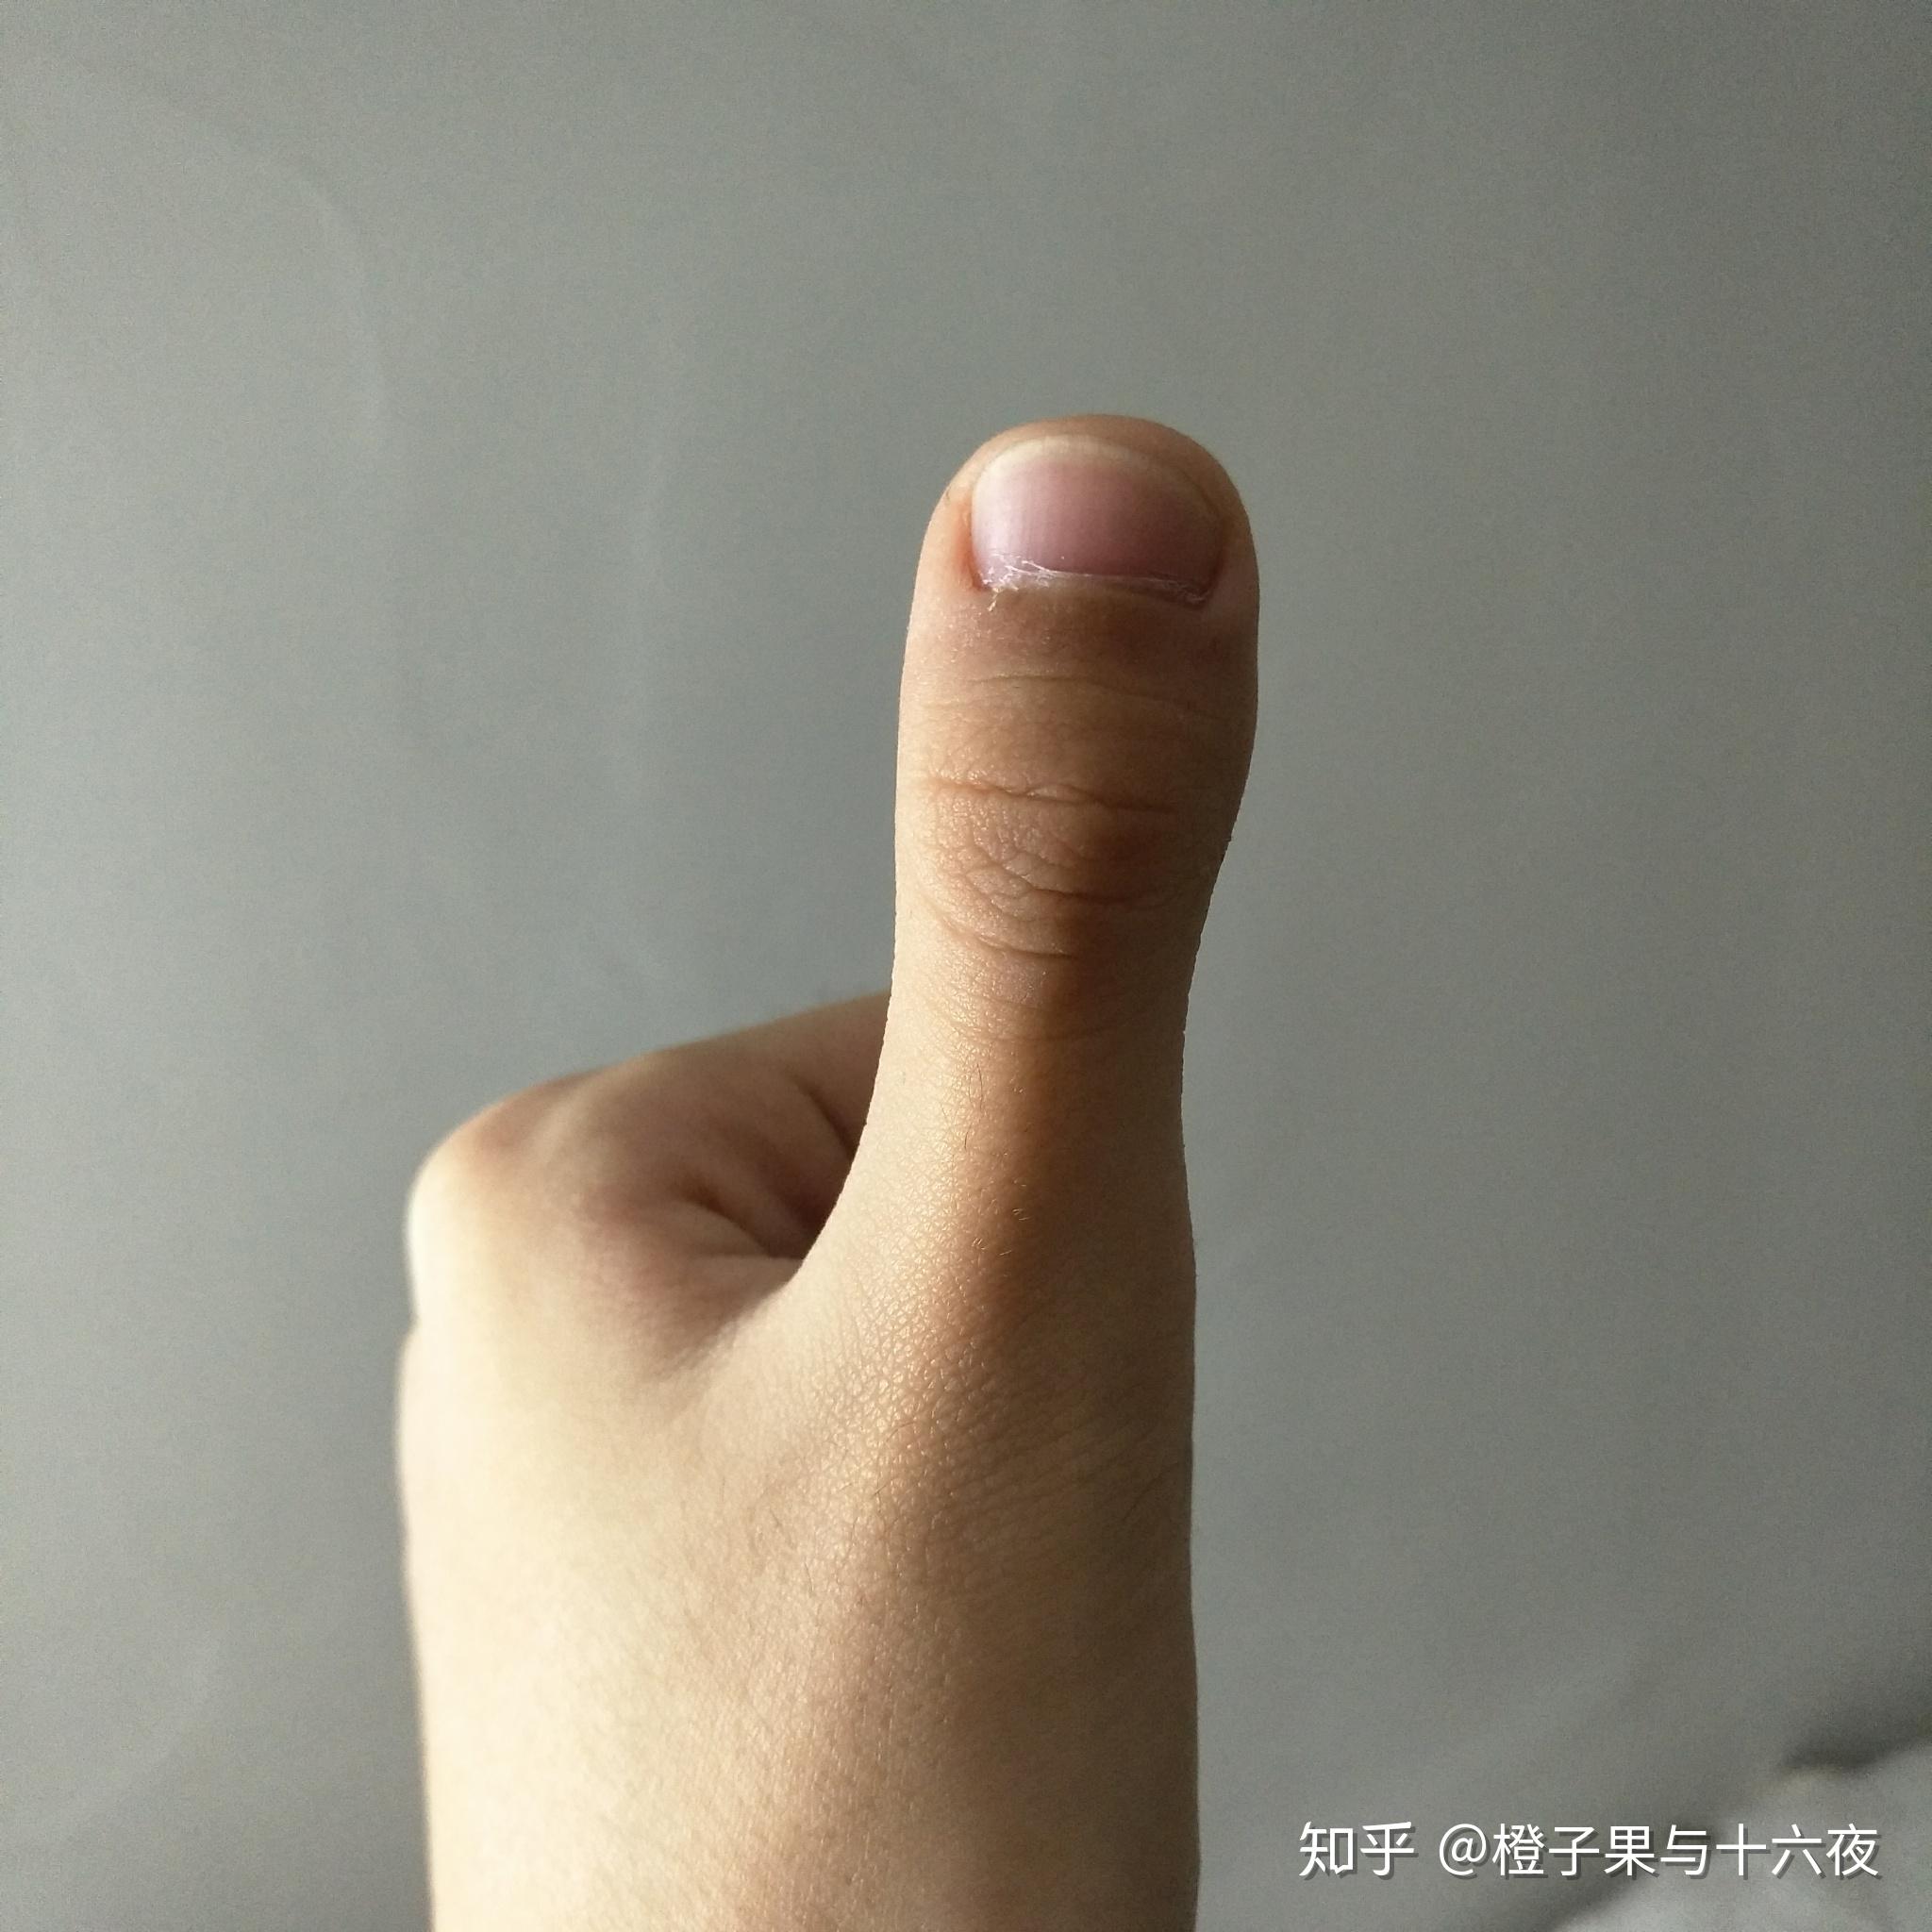 大拇指扁平特别宽图片